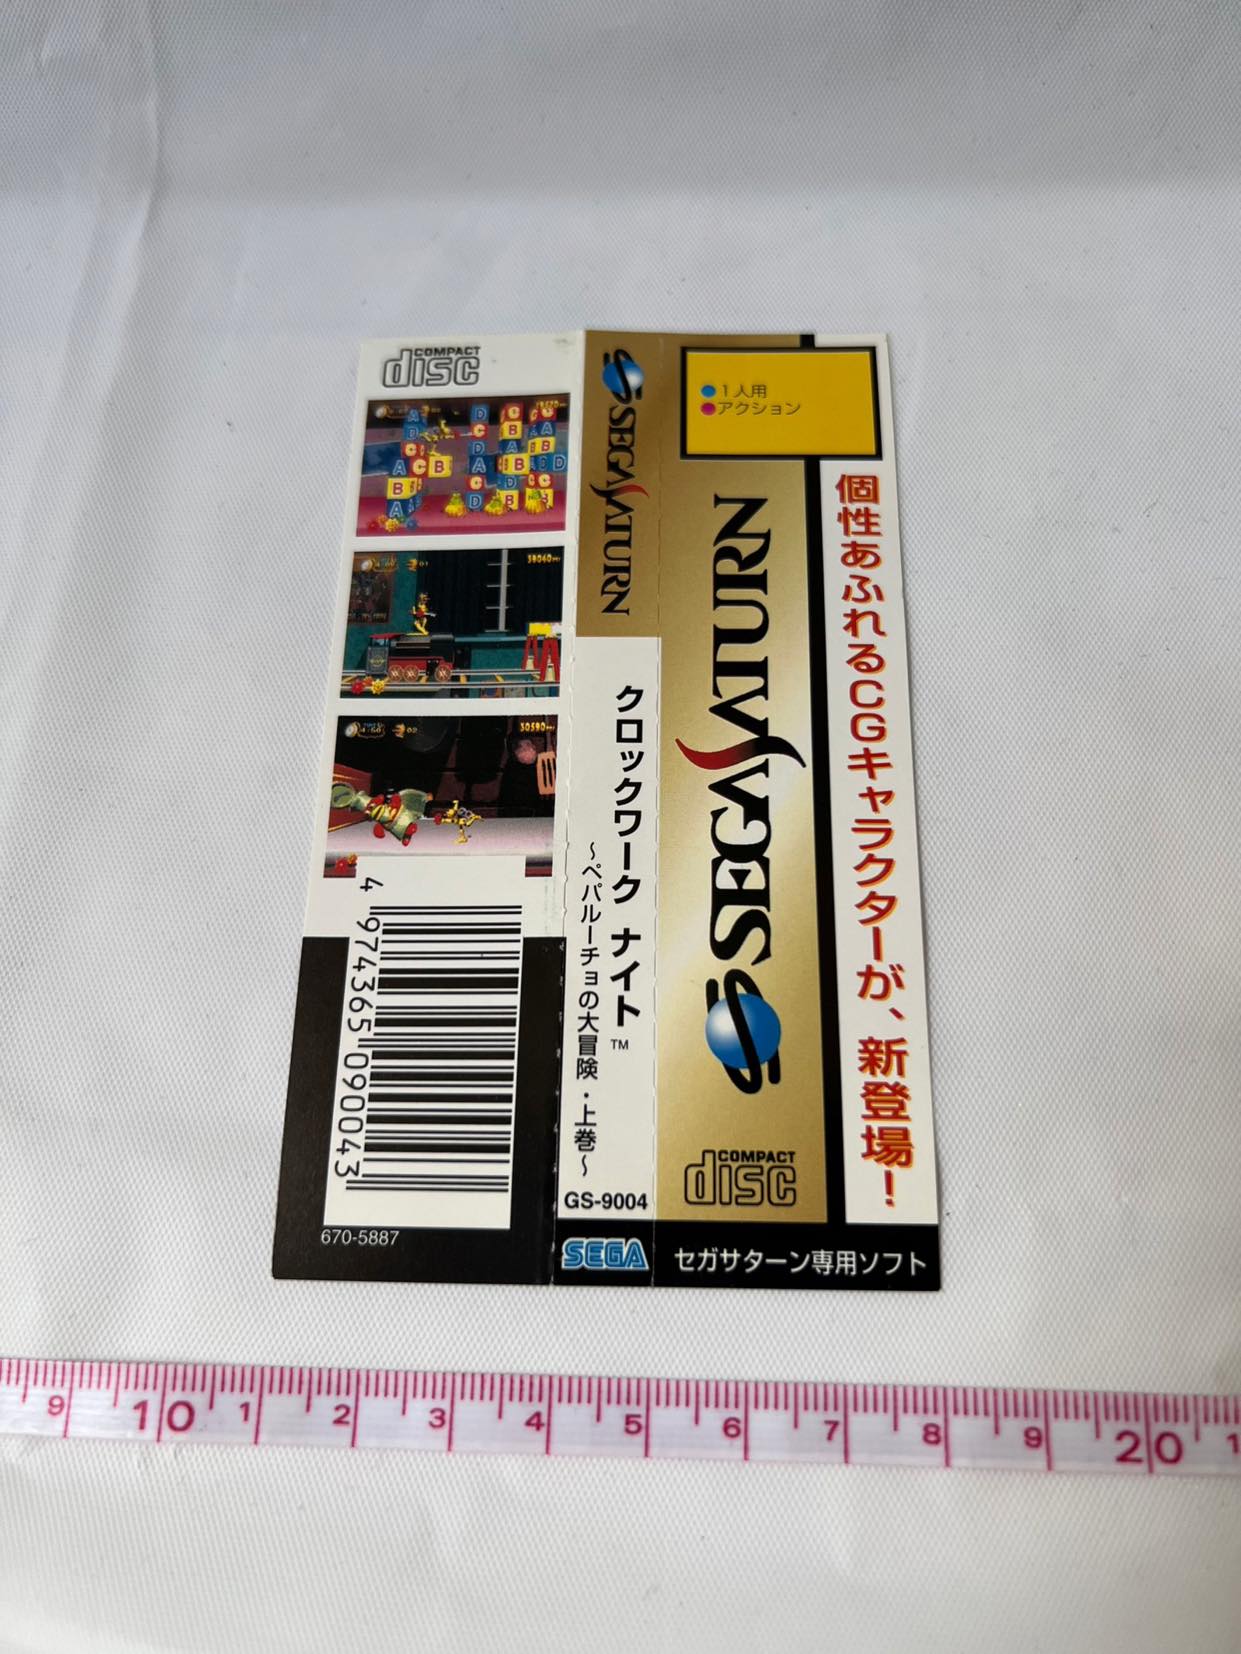 CLOCK WORK KNIGHT Vol.1, 2 SEGA Saturn Games, w/Spine Card, Manual, Case-f1006-